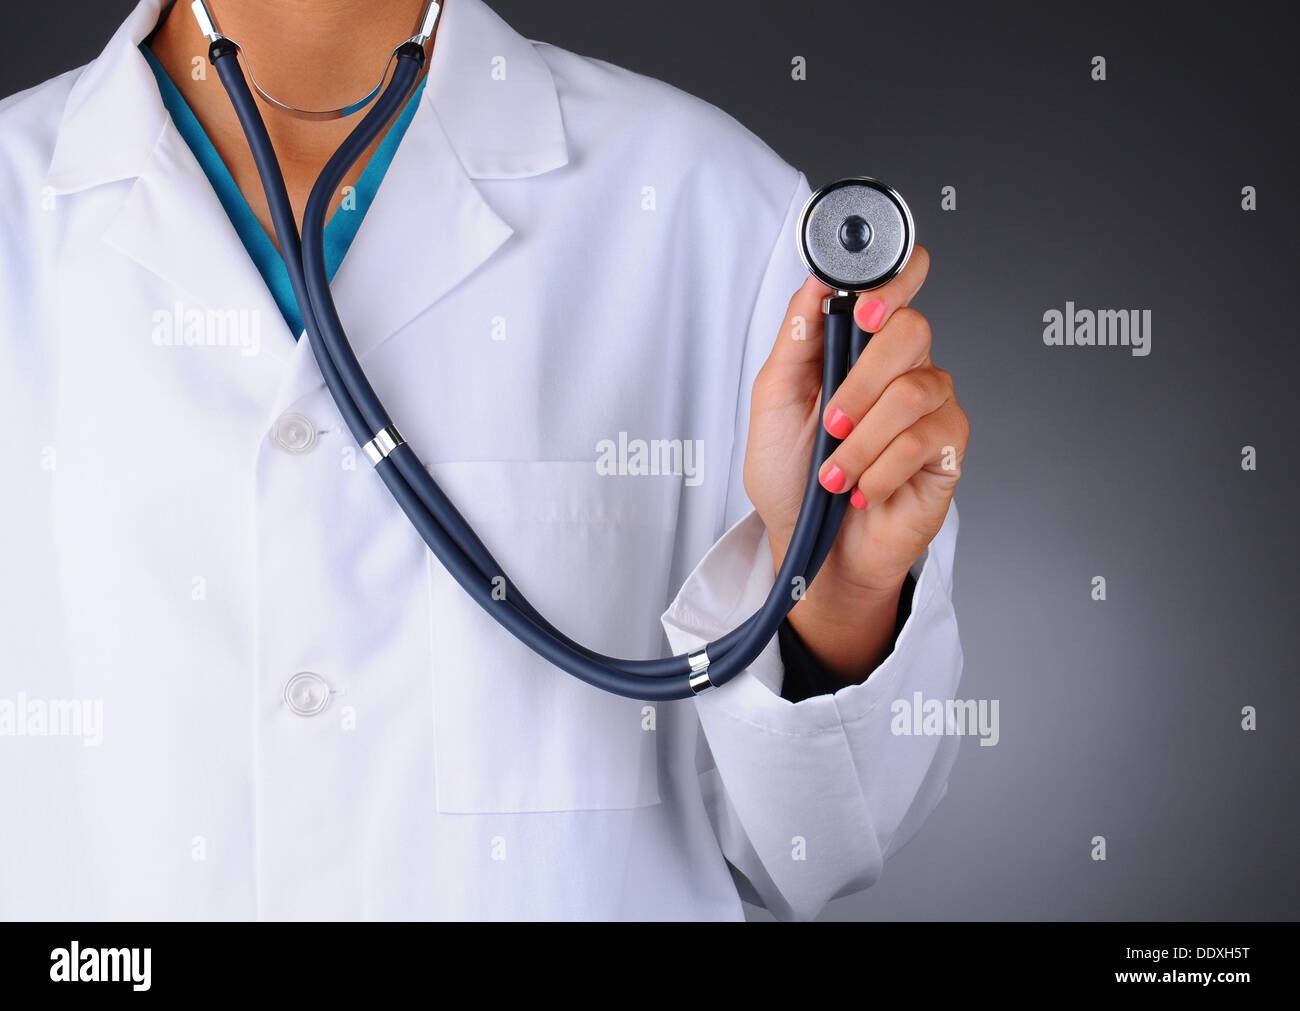 Primer plano de una enfermera o médico sosteniendo un estetoscopio mirando hacia la cámara. La mujer es irreconocible Foto de stock